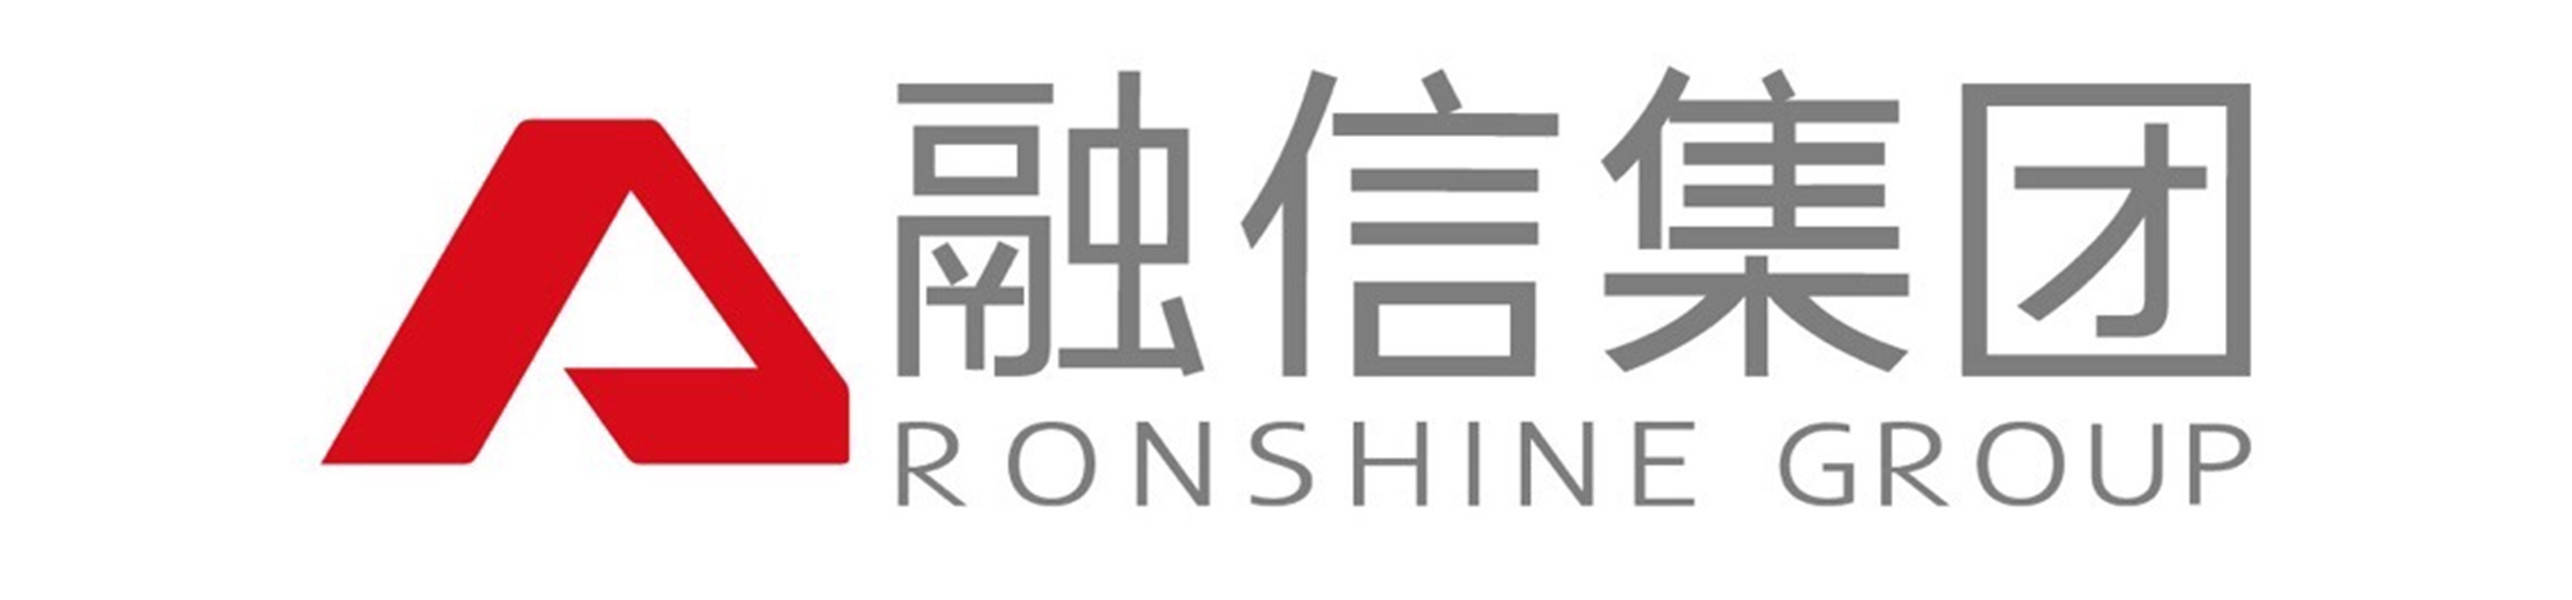 融信集团logo图片